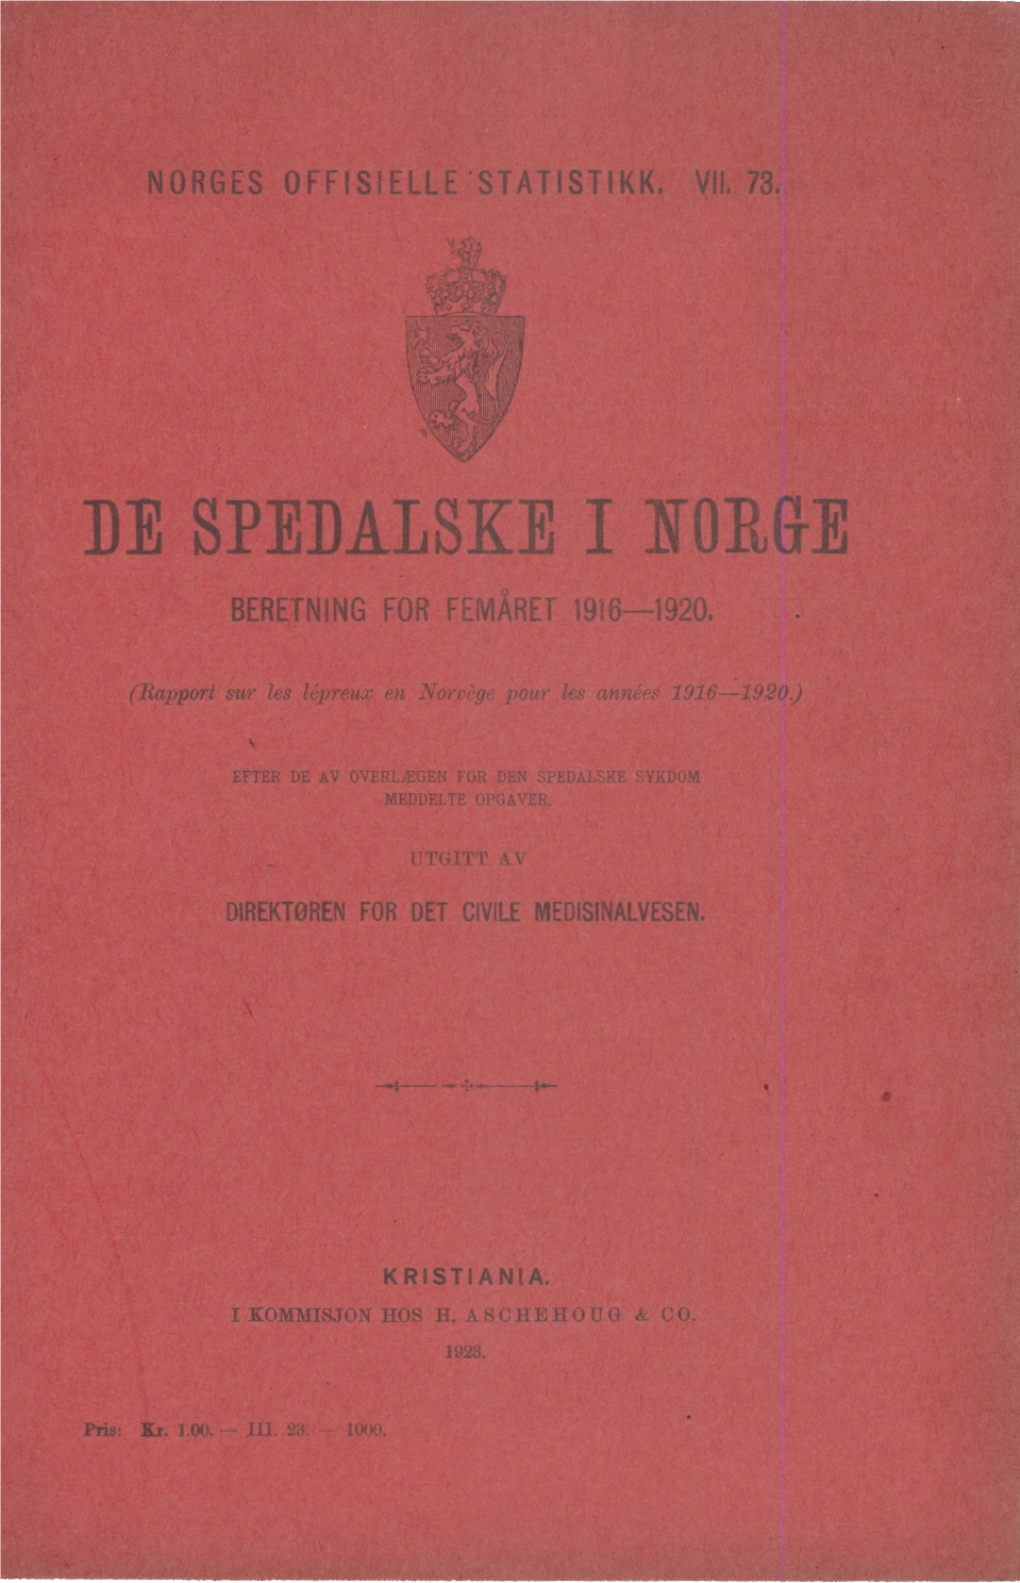 De Spedalske I Norge. Beretning for Femåret 1916-1920